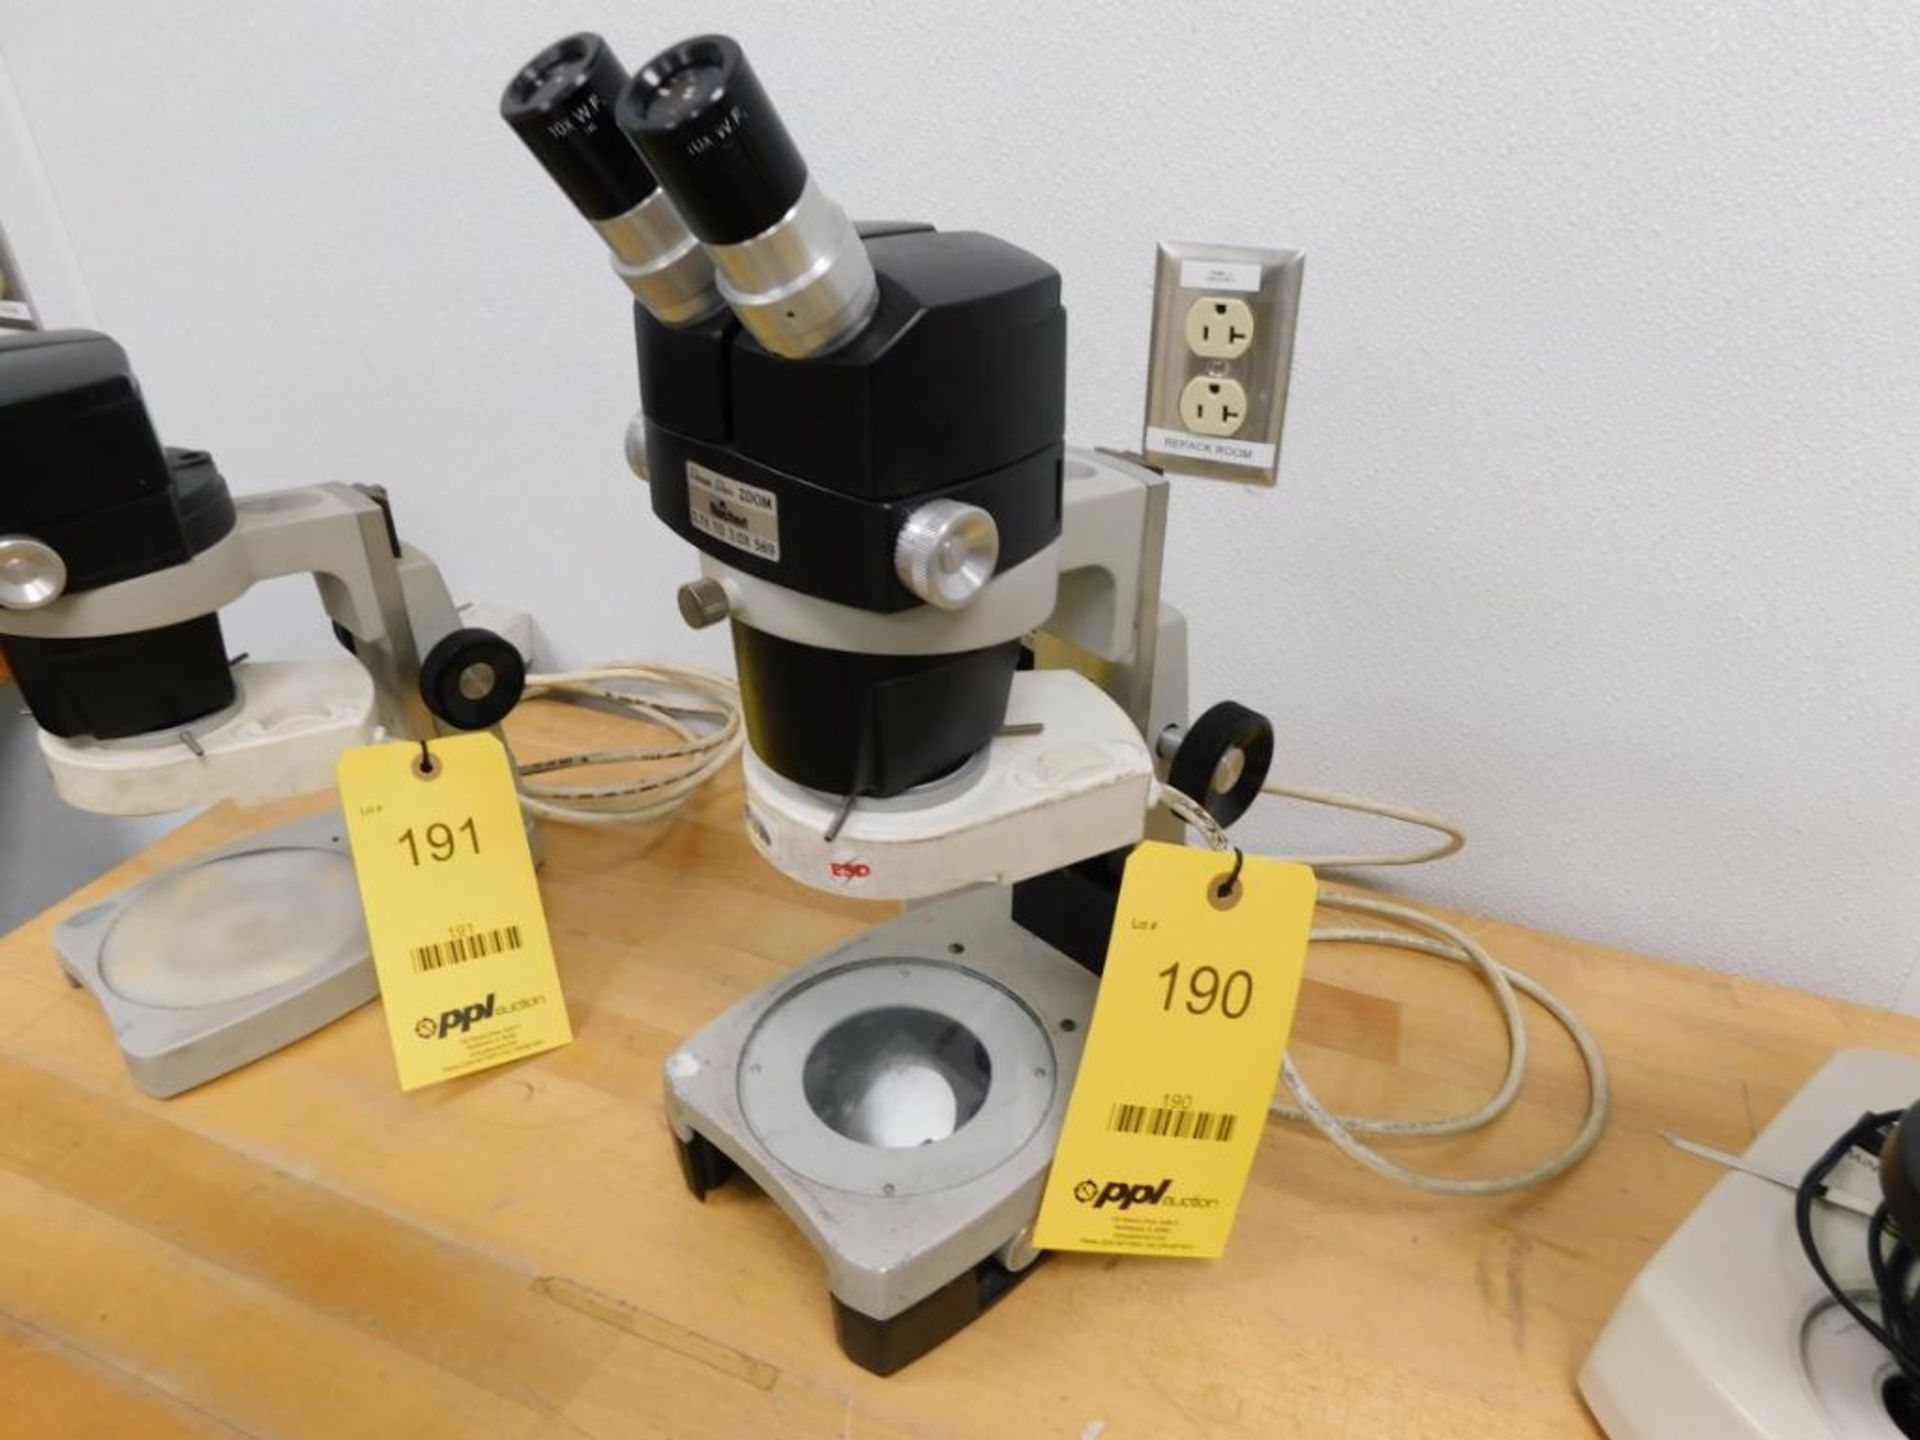 Reichert Microscope Model Stereo Star Zoom